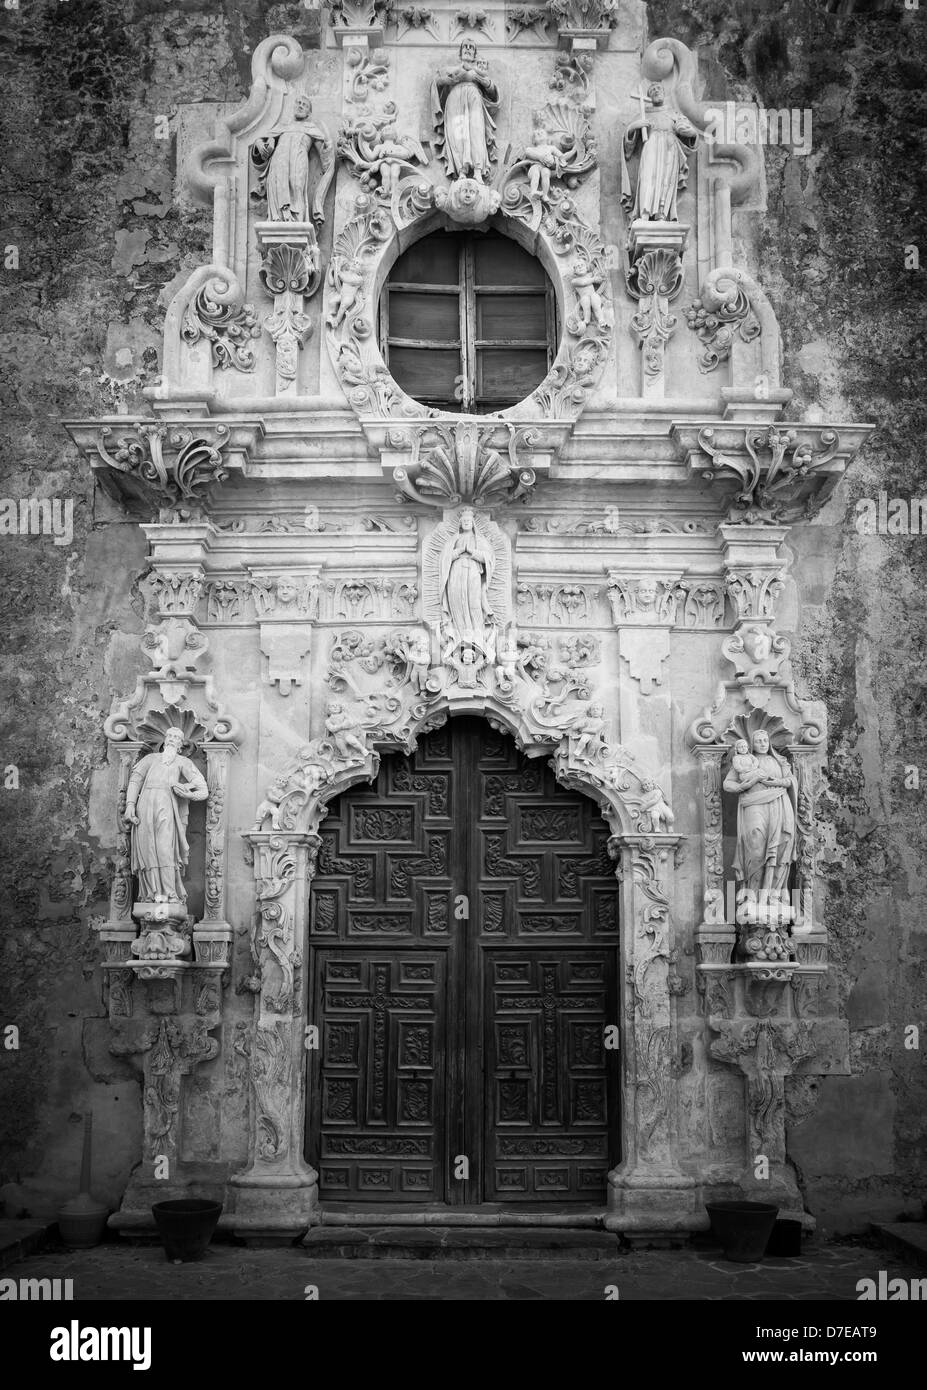 Entrance to Mission San José y San Miguel de Aguayo in San Antonio, Texas Stock Photo